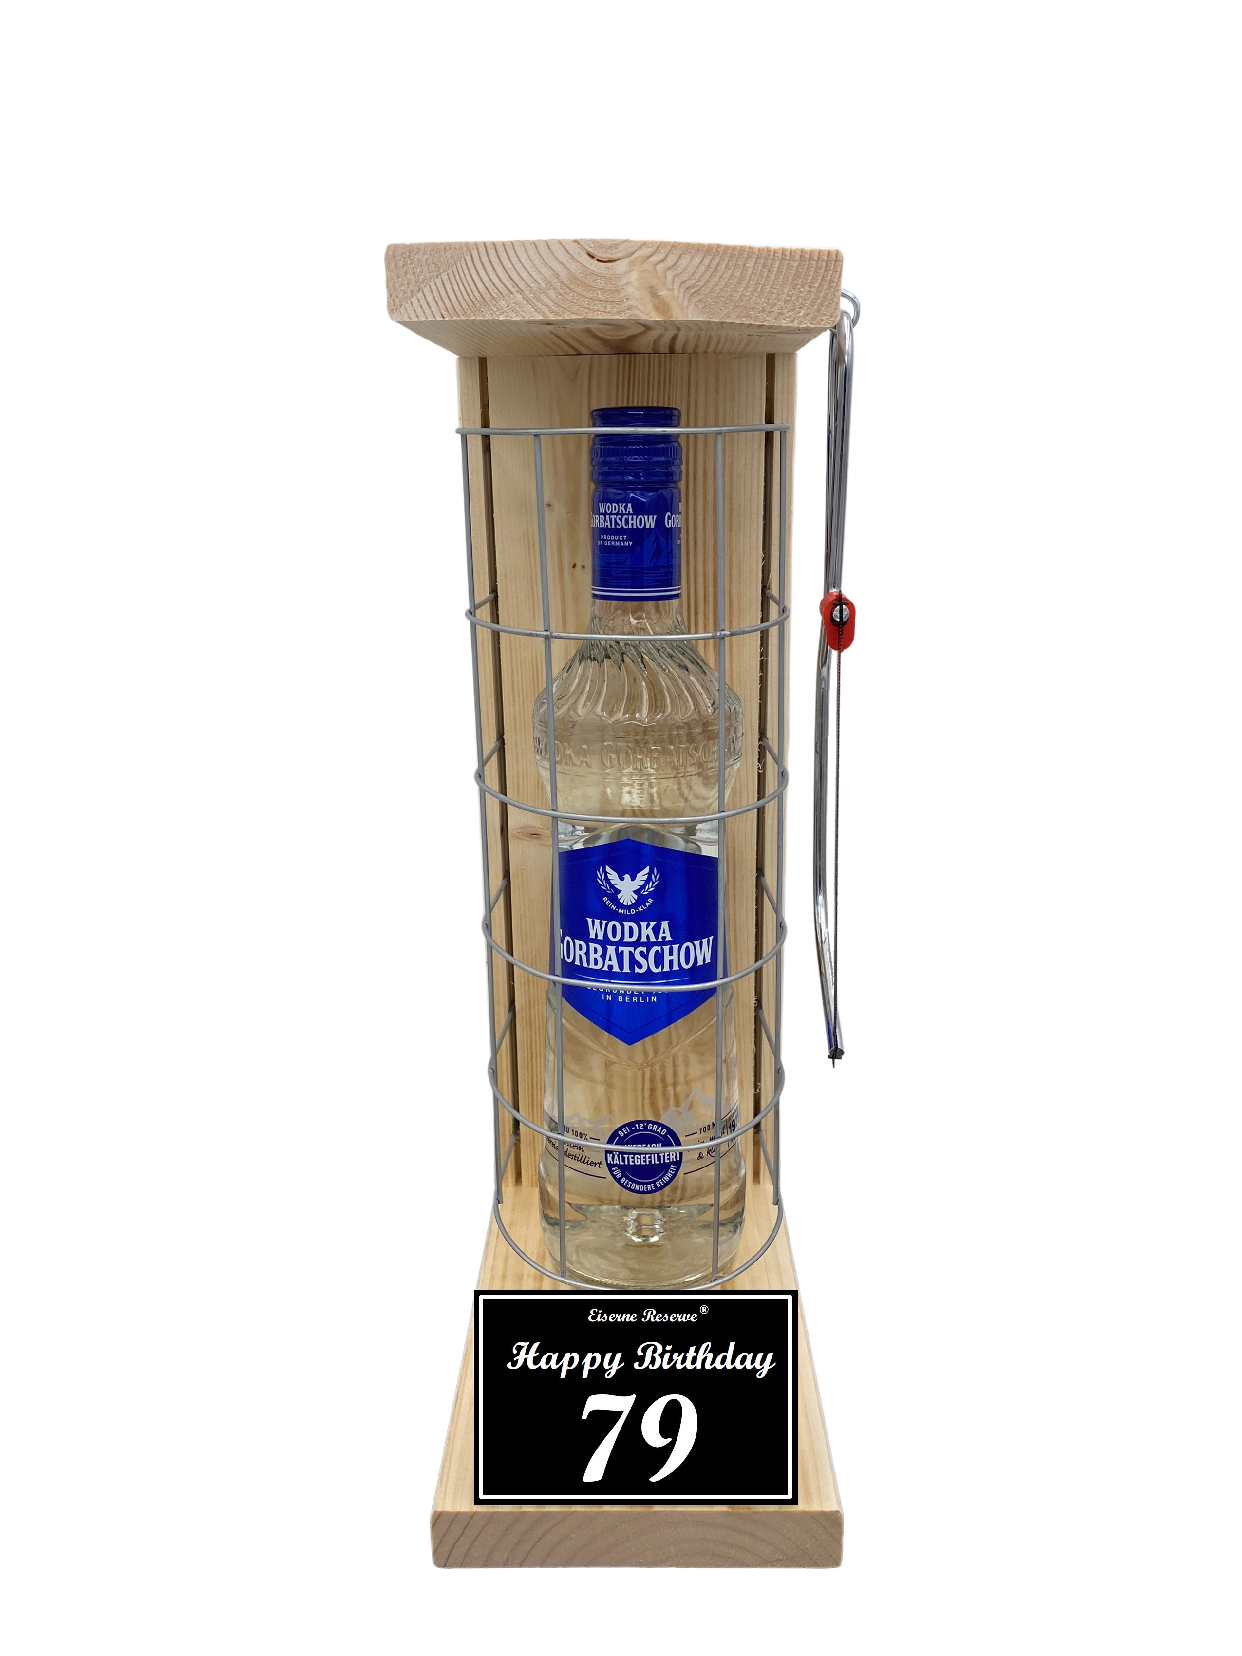 Wodka Geschenk zum 79 Geburtstag - Eiserne Reserve Gitterkäfig